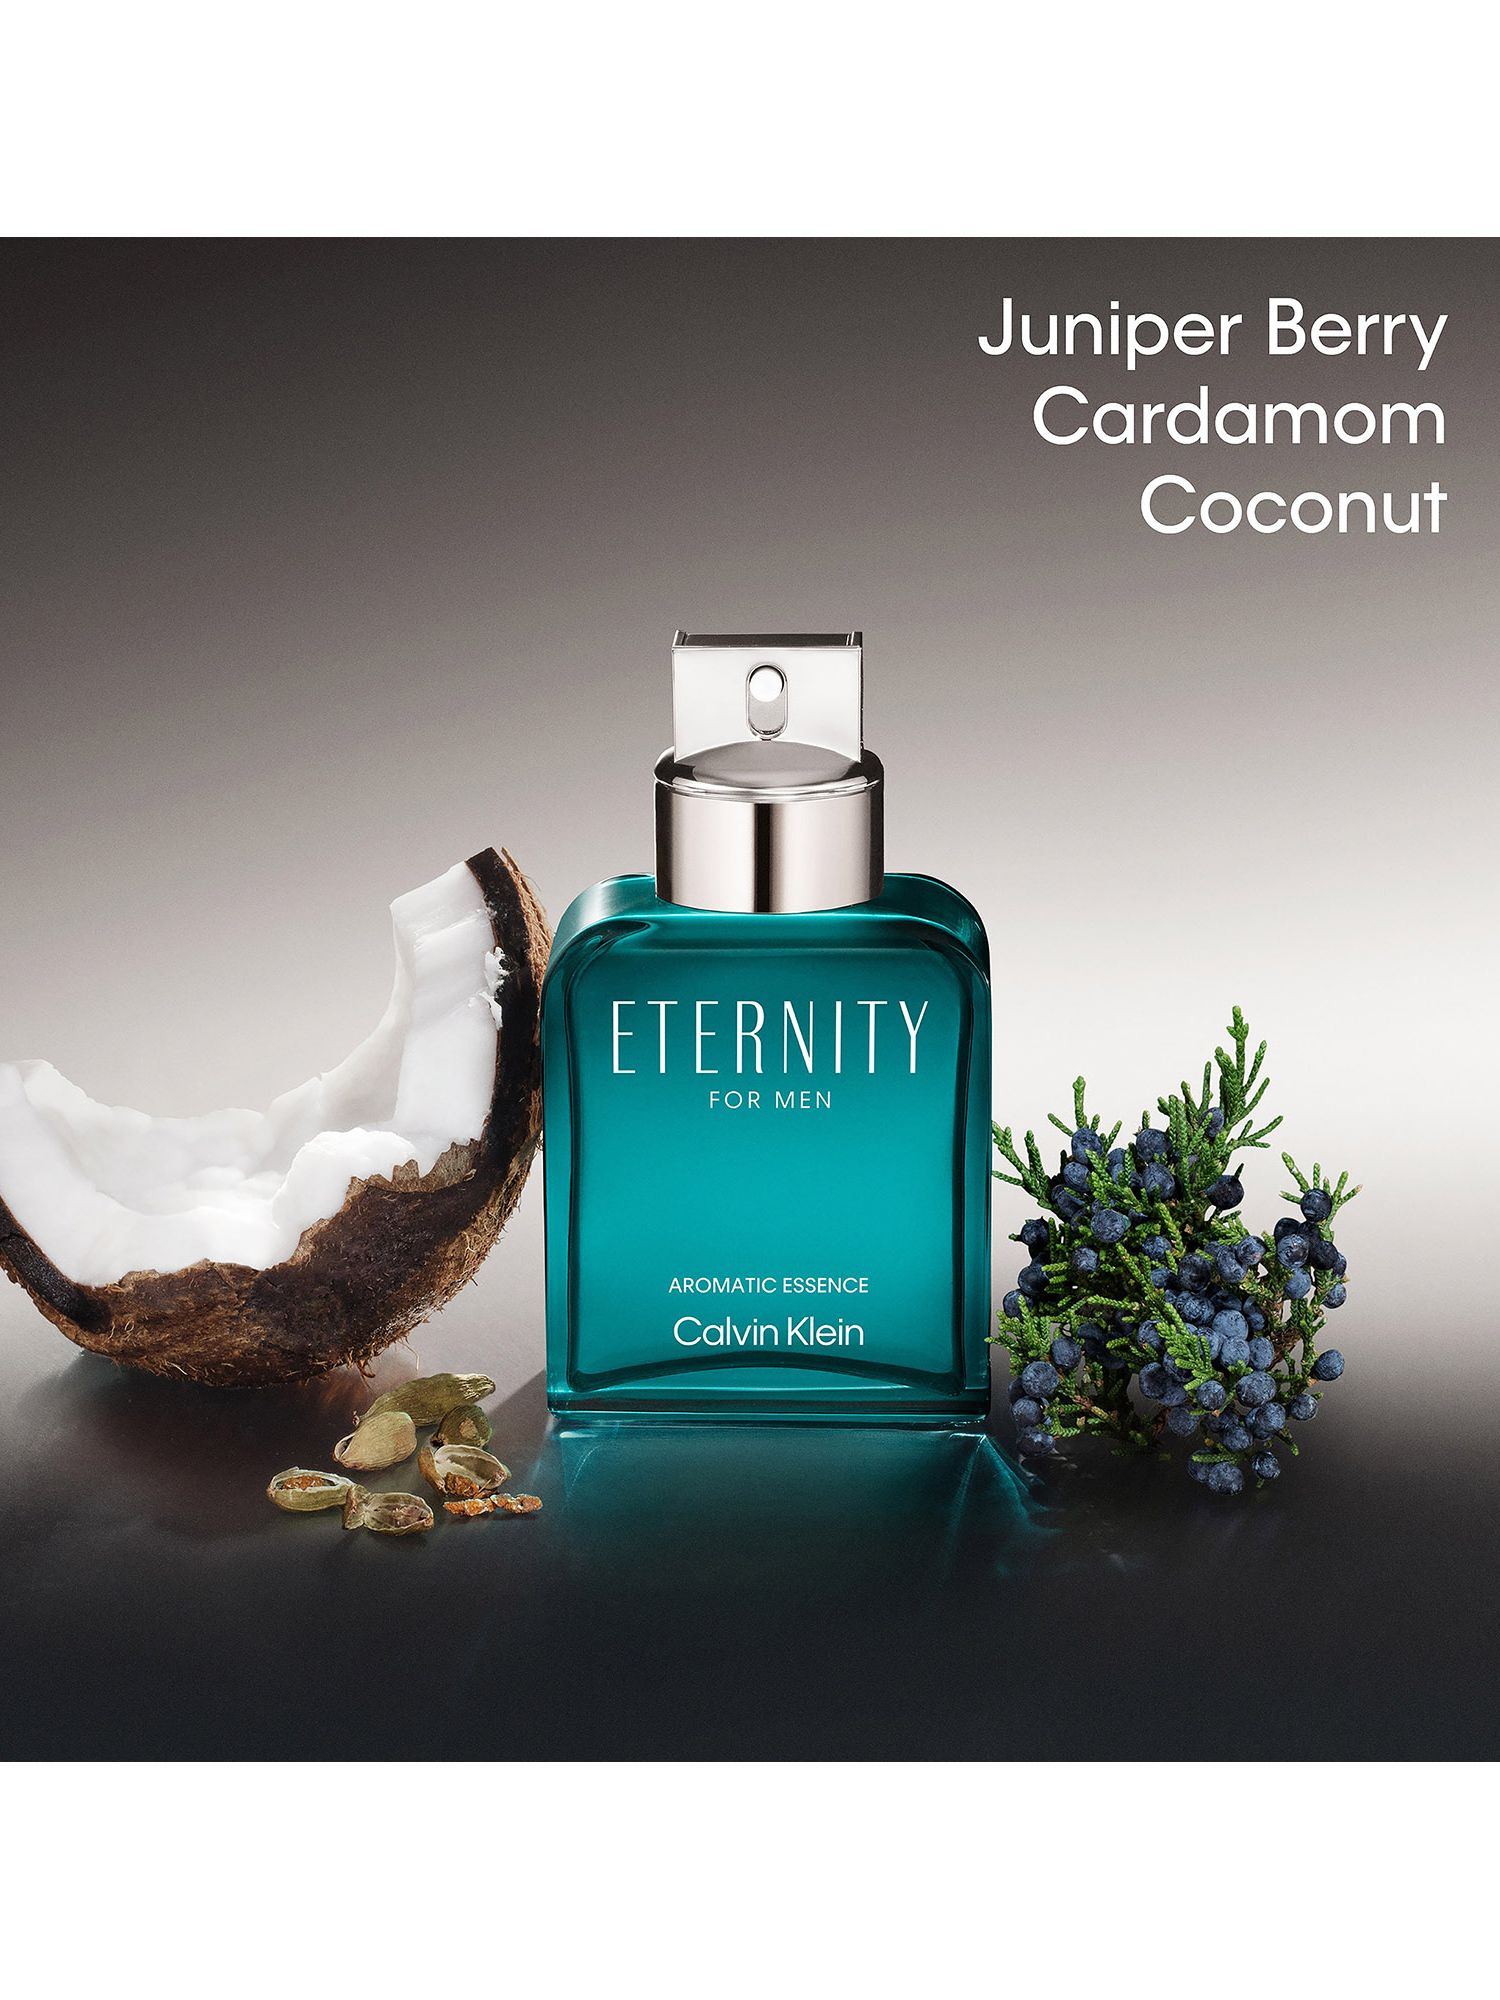 Calvin Klein Eternity Aromatic Essence for Men Eau de Parfum Intense, 100ml 2